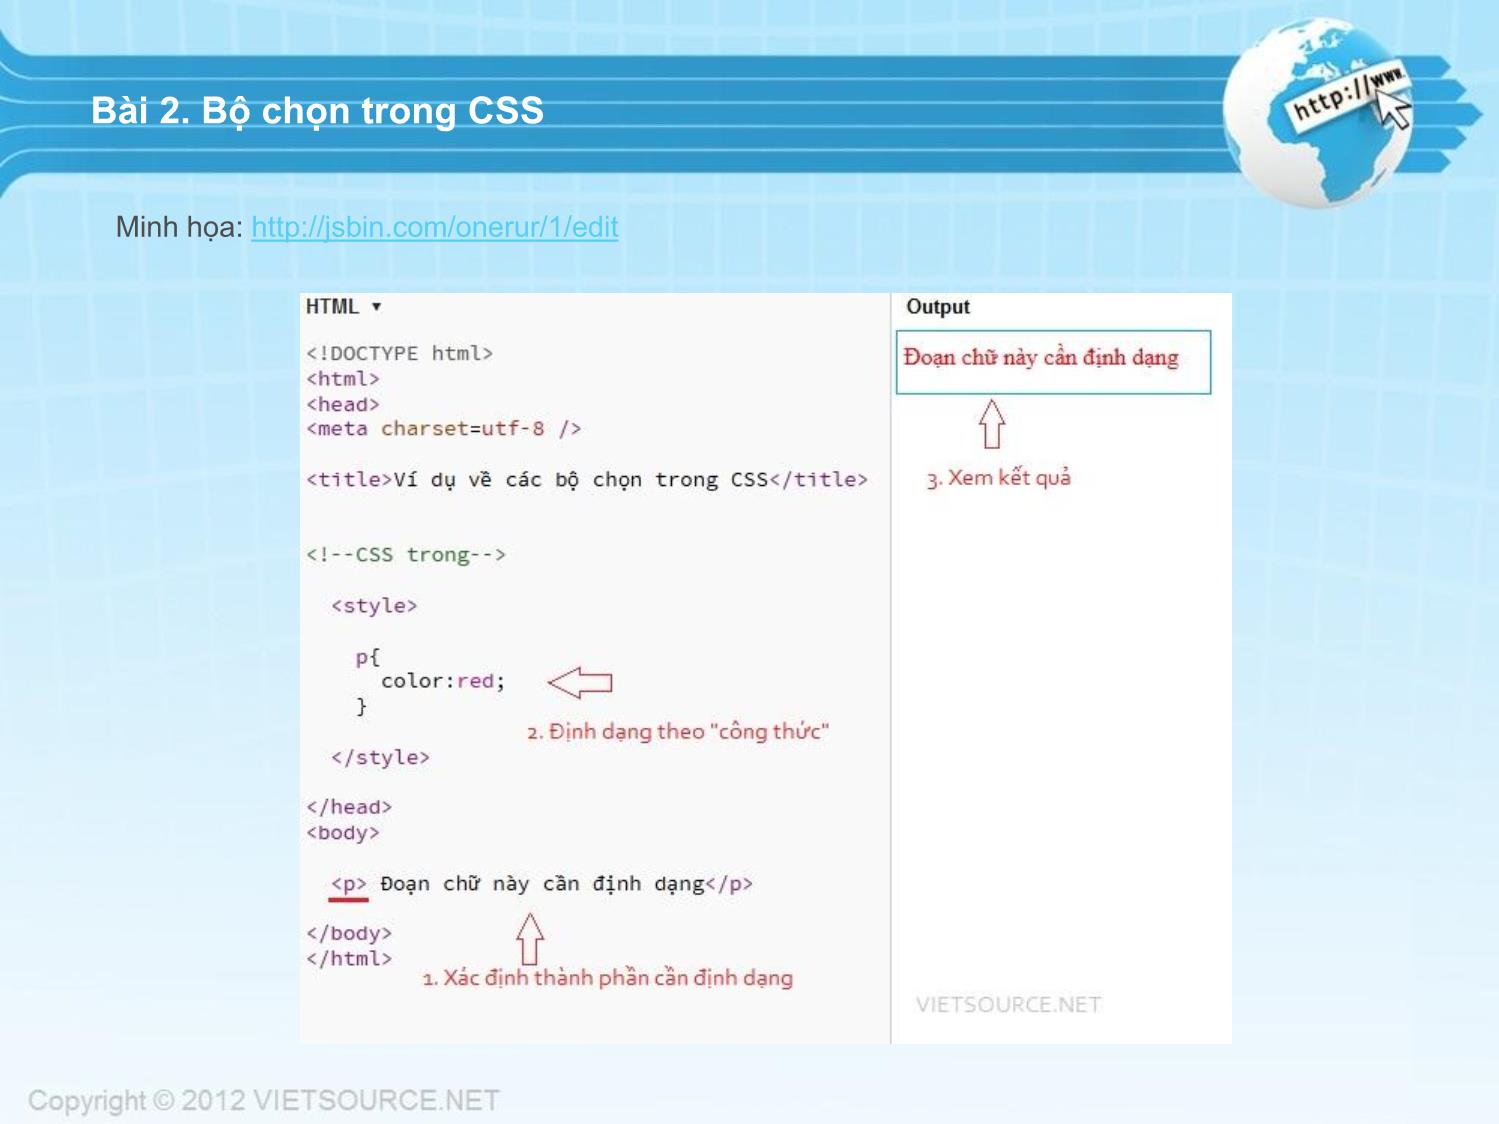 Bài giảng CSS - Bài 2: Bộ chọn trong CSS trang 2